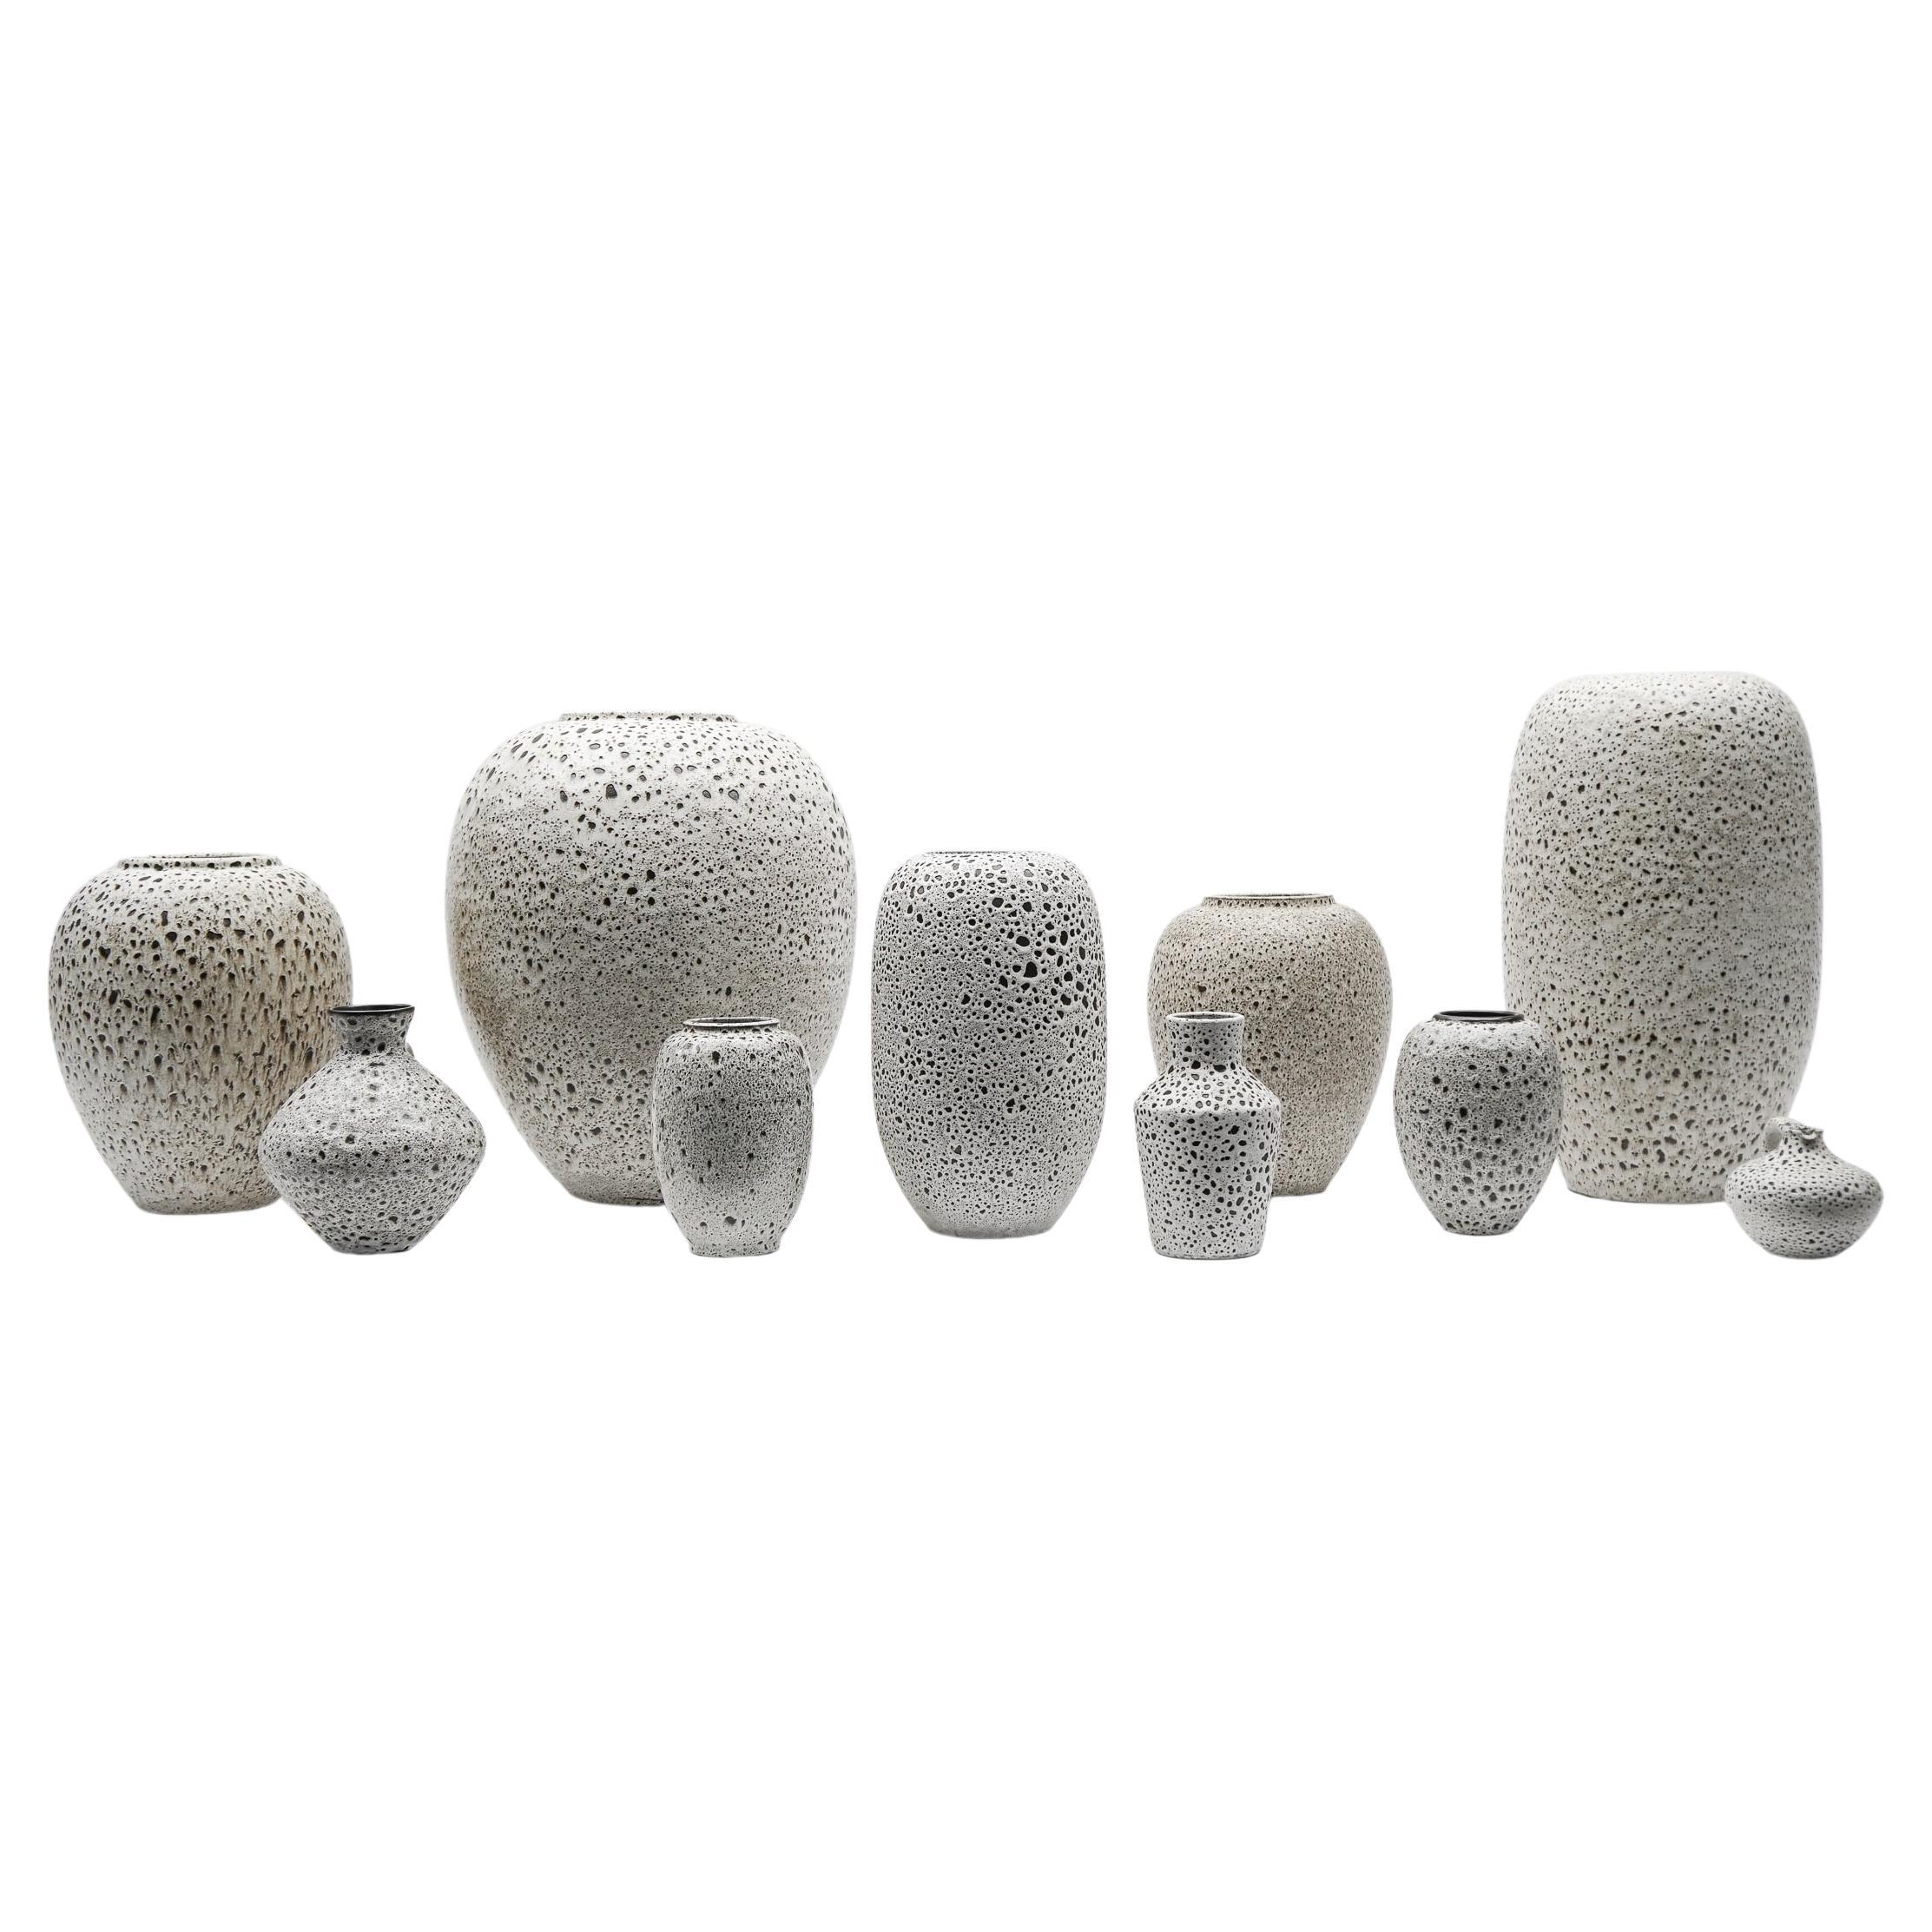 A set of White Studio Ceramic Vases by Wilhelm & Elly Kuch, 1960s, Germany